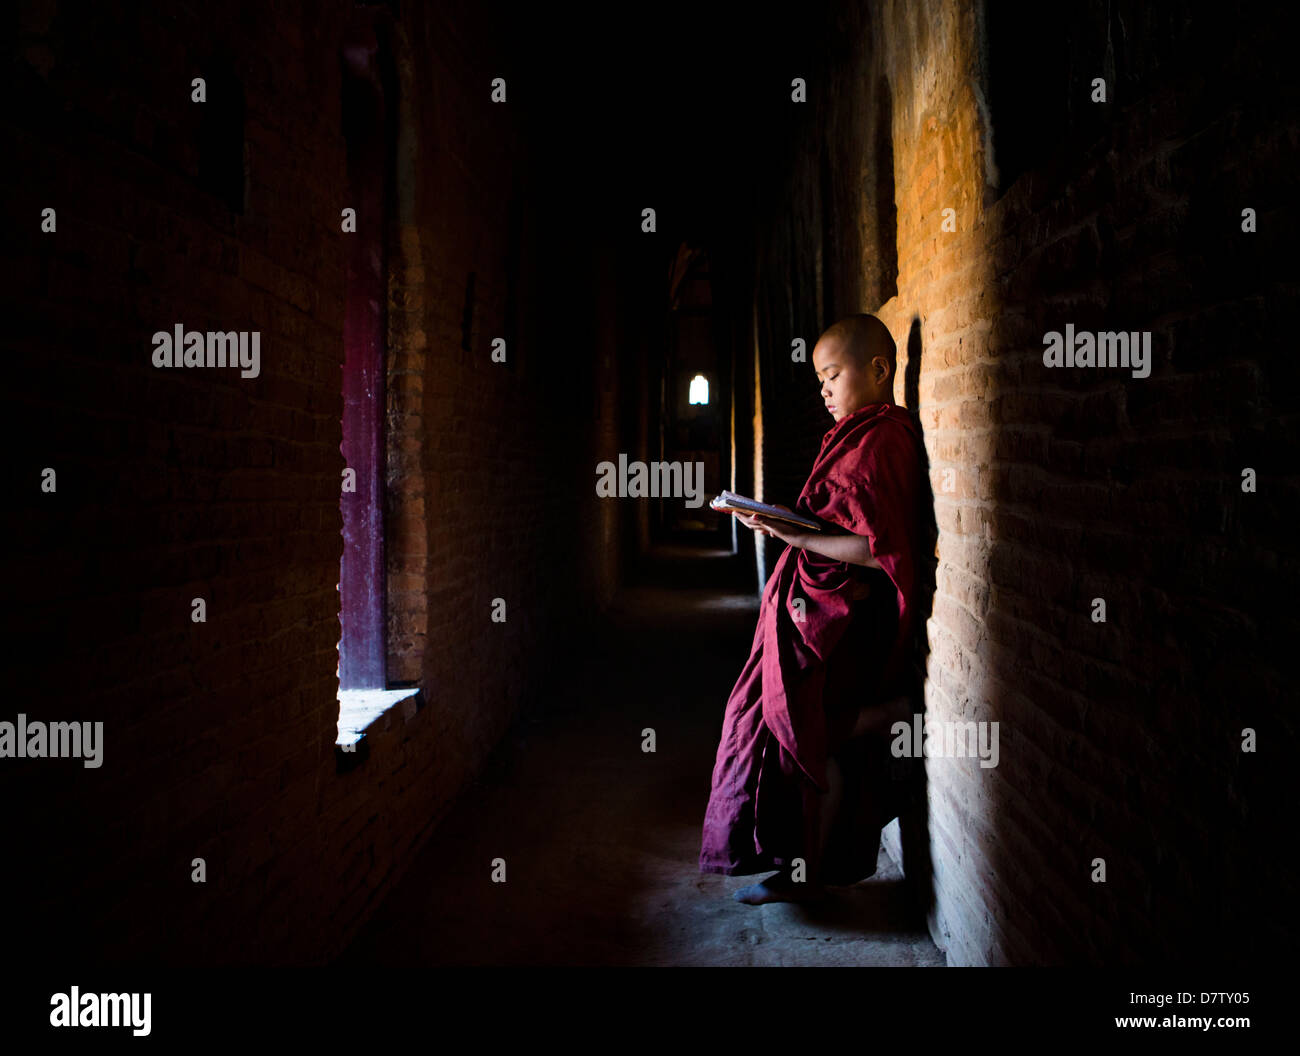 Il debuttante monaco buddista la lettura di scritture Buddhiste nella luce di una finestra in uno dei molti templi di Bagan, Birmania Foto Stock